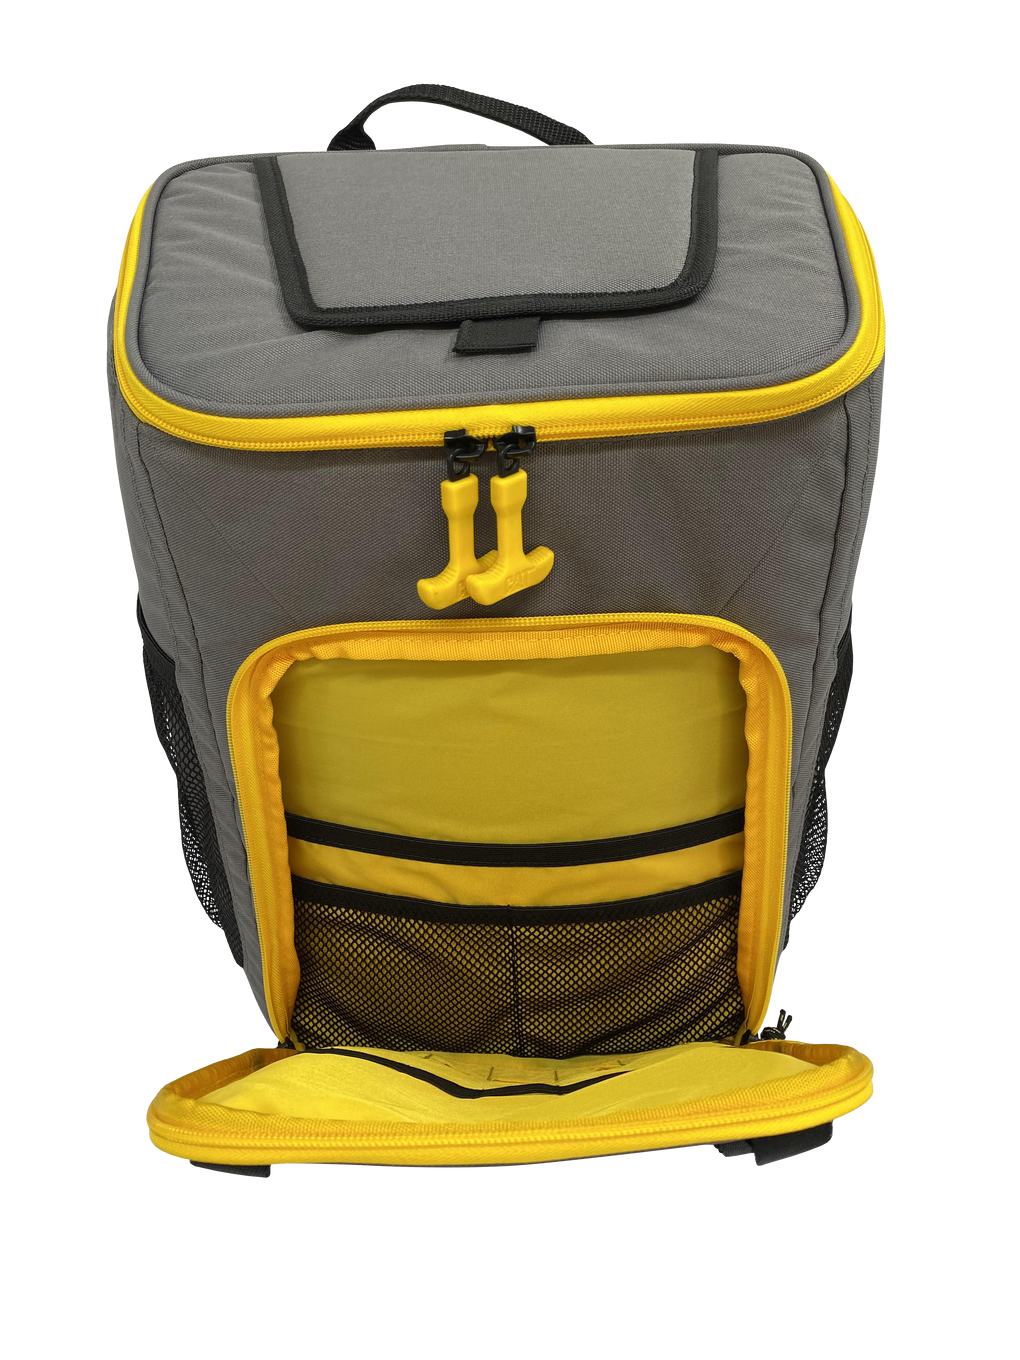 Caterpillar 28-Can Backpack Cooler, 11 x 9 x 15.75